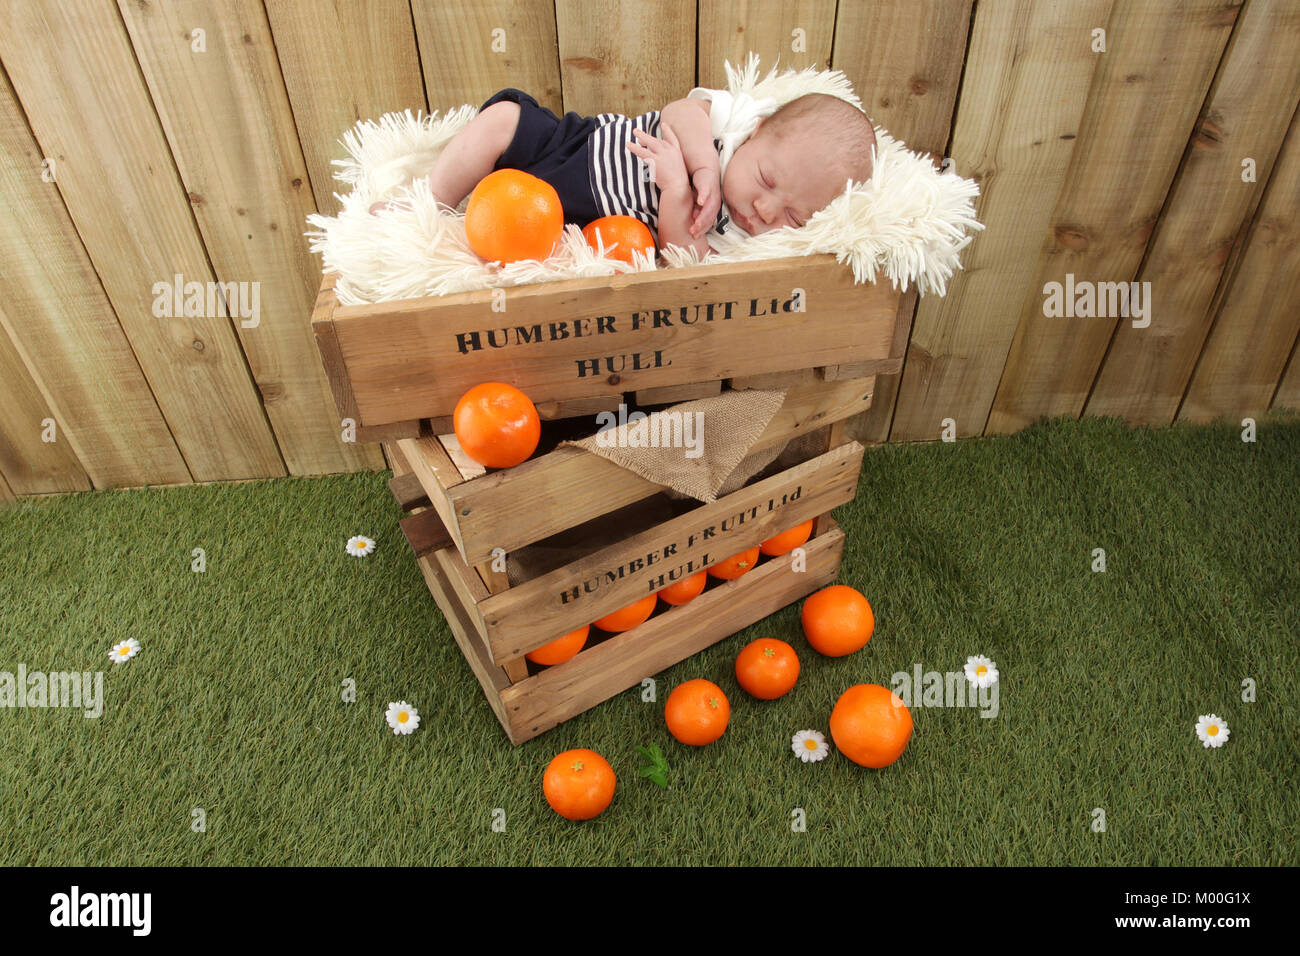 1 mois garçon endormi dans les boîtes de fruits avec les oranges, marché de fruits coque Banque D'Images